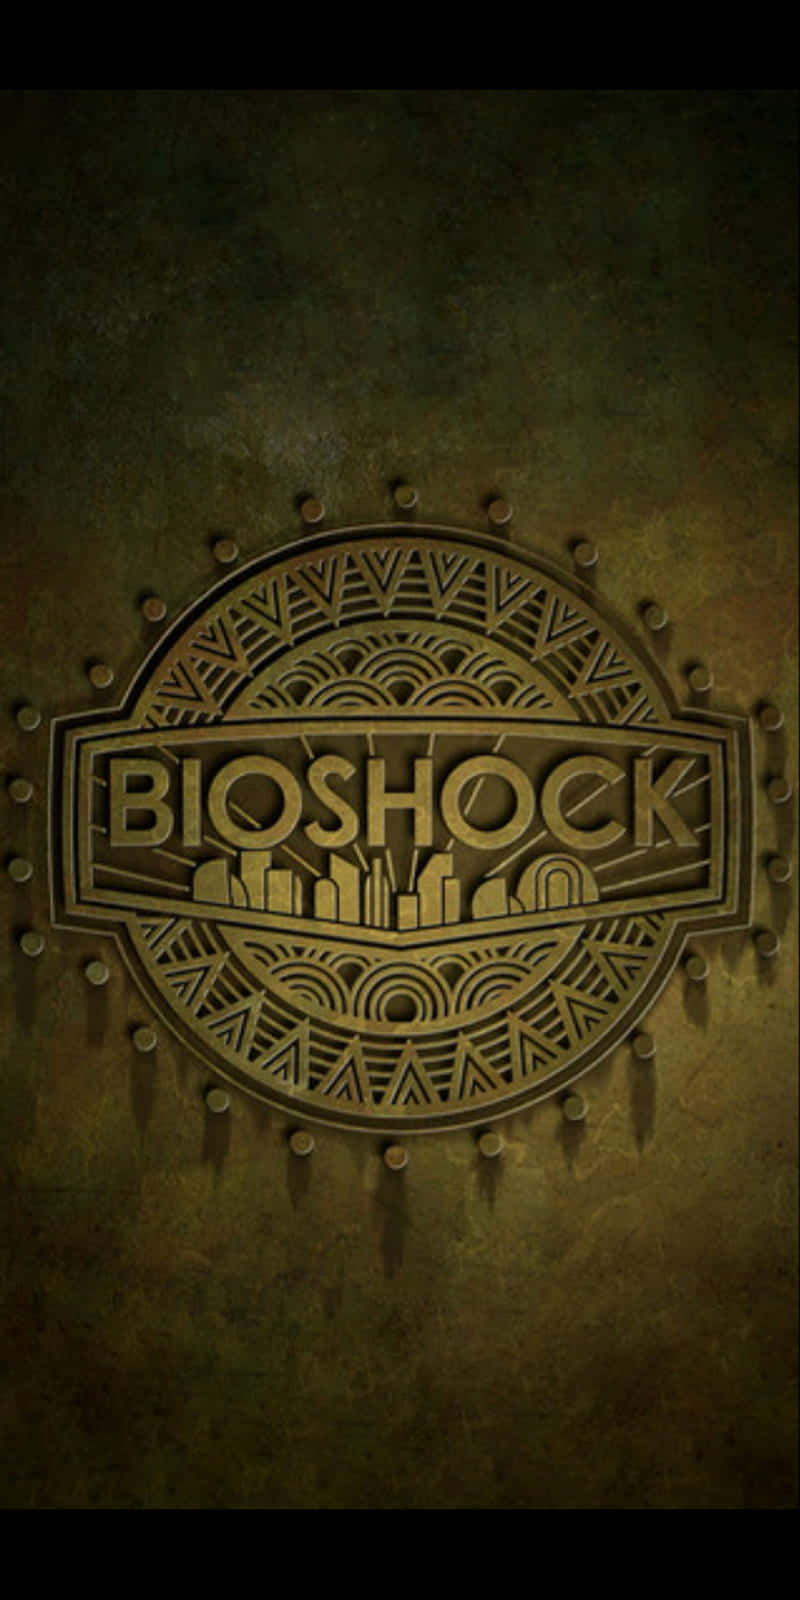 Bioshock - Pc - Pc - Pc - Pc - Pc - P Wallpaper